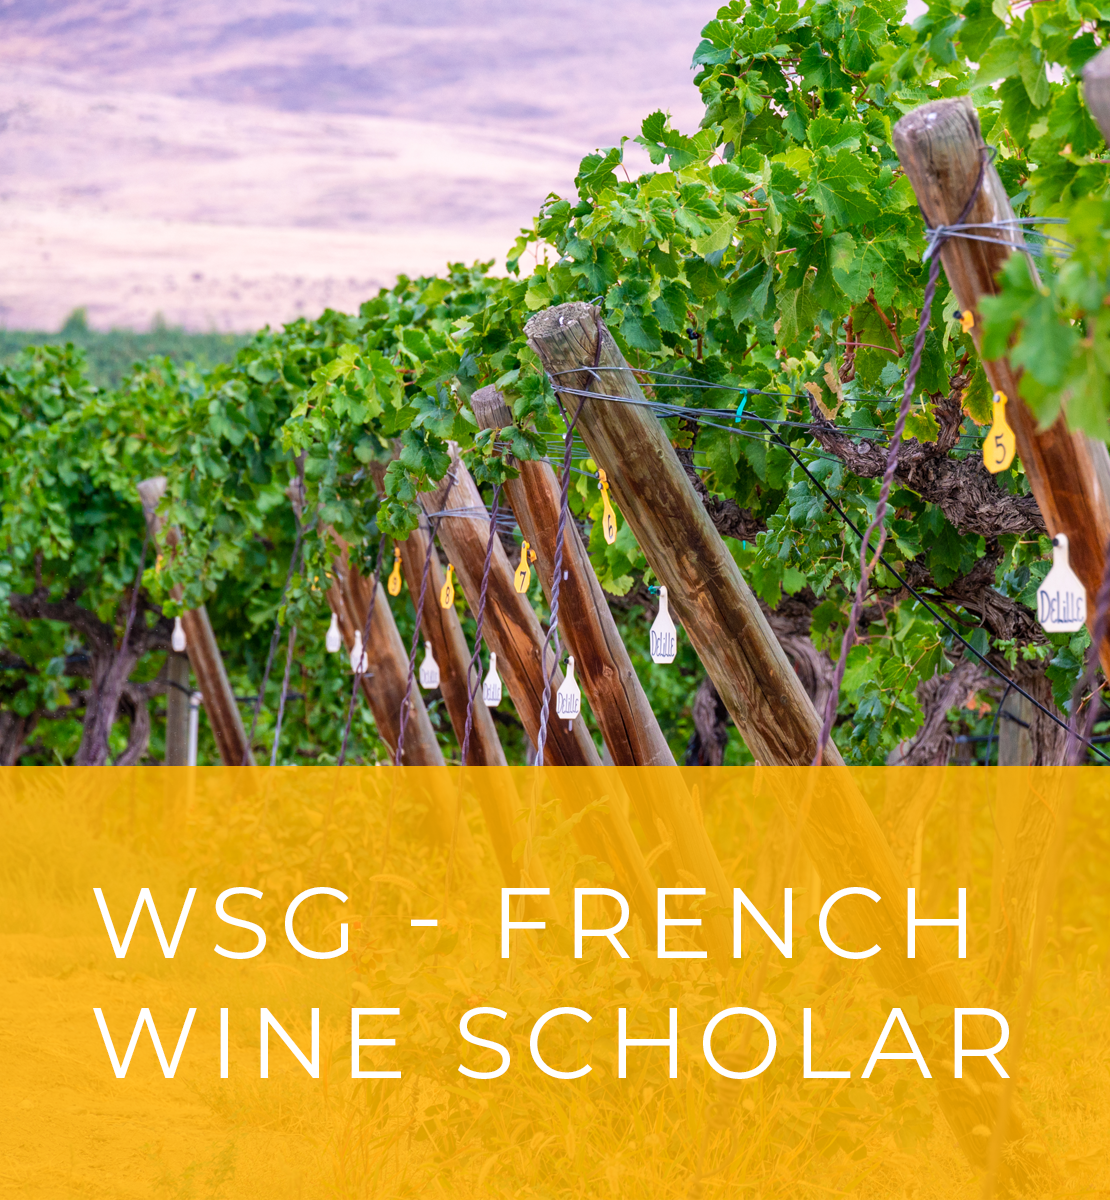 WSG French Wine Scholar